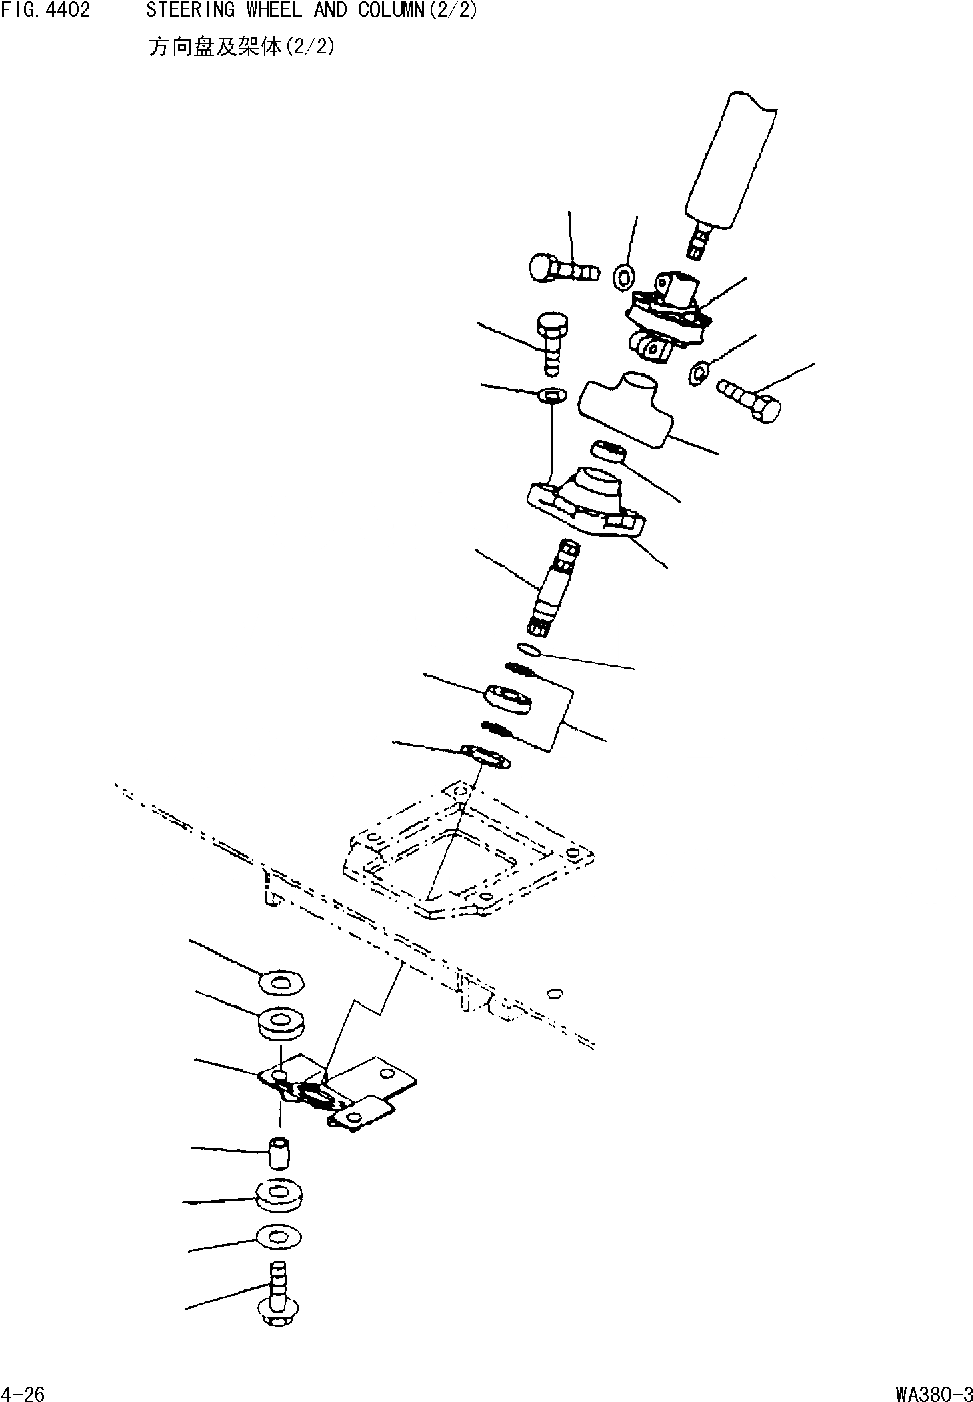 Схема запчастей Komatsu WA380-DZ-3 - РУЛЕВОЕ КОЛЕСО И РУЛЕВ. КОЛОНКА(/) [РУЛЕВ. УПРАВЛЕНИЕ И СИСТЕМА УПРАВЛЕНИЯ]